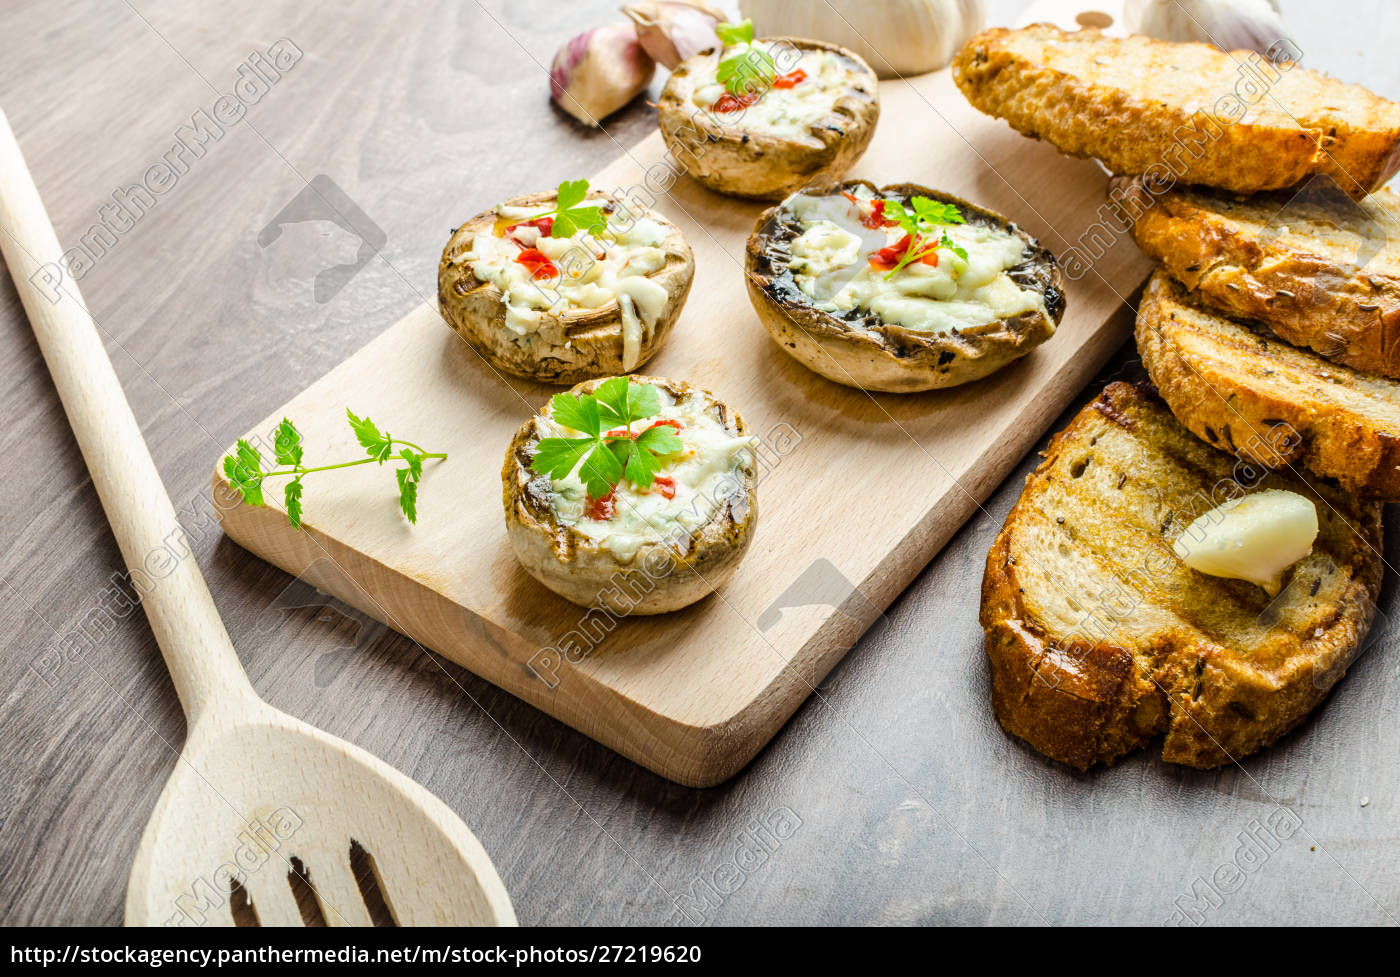 Gegrillte Pilze gefüllter Käse und Chili - Lizenzfreies Foto ...